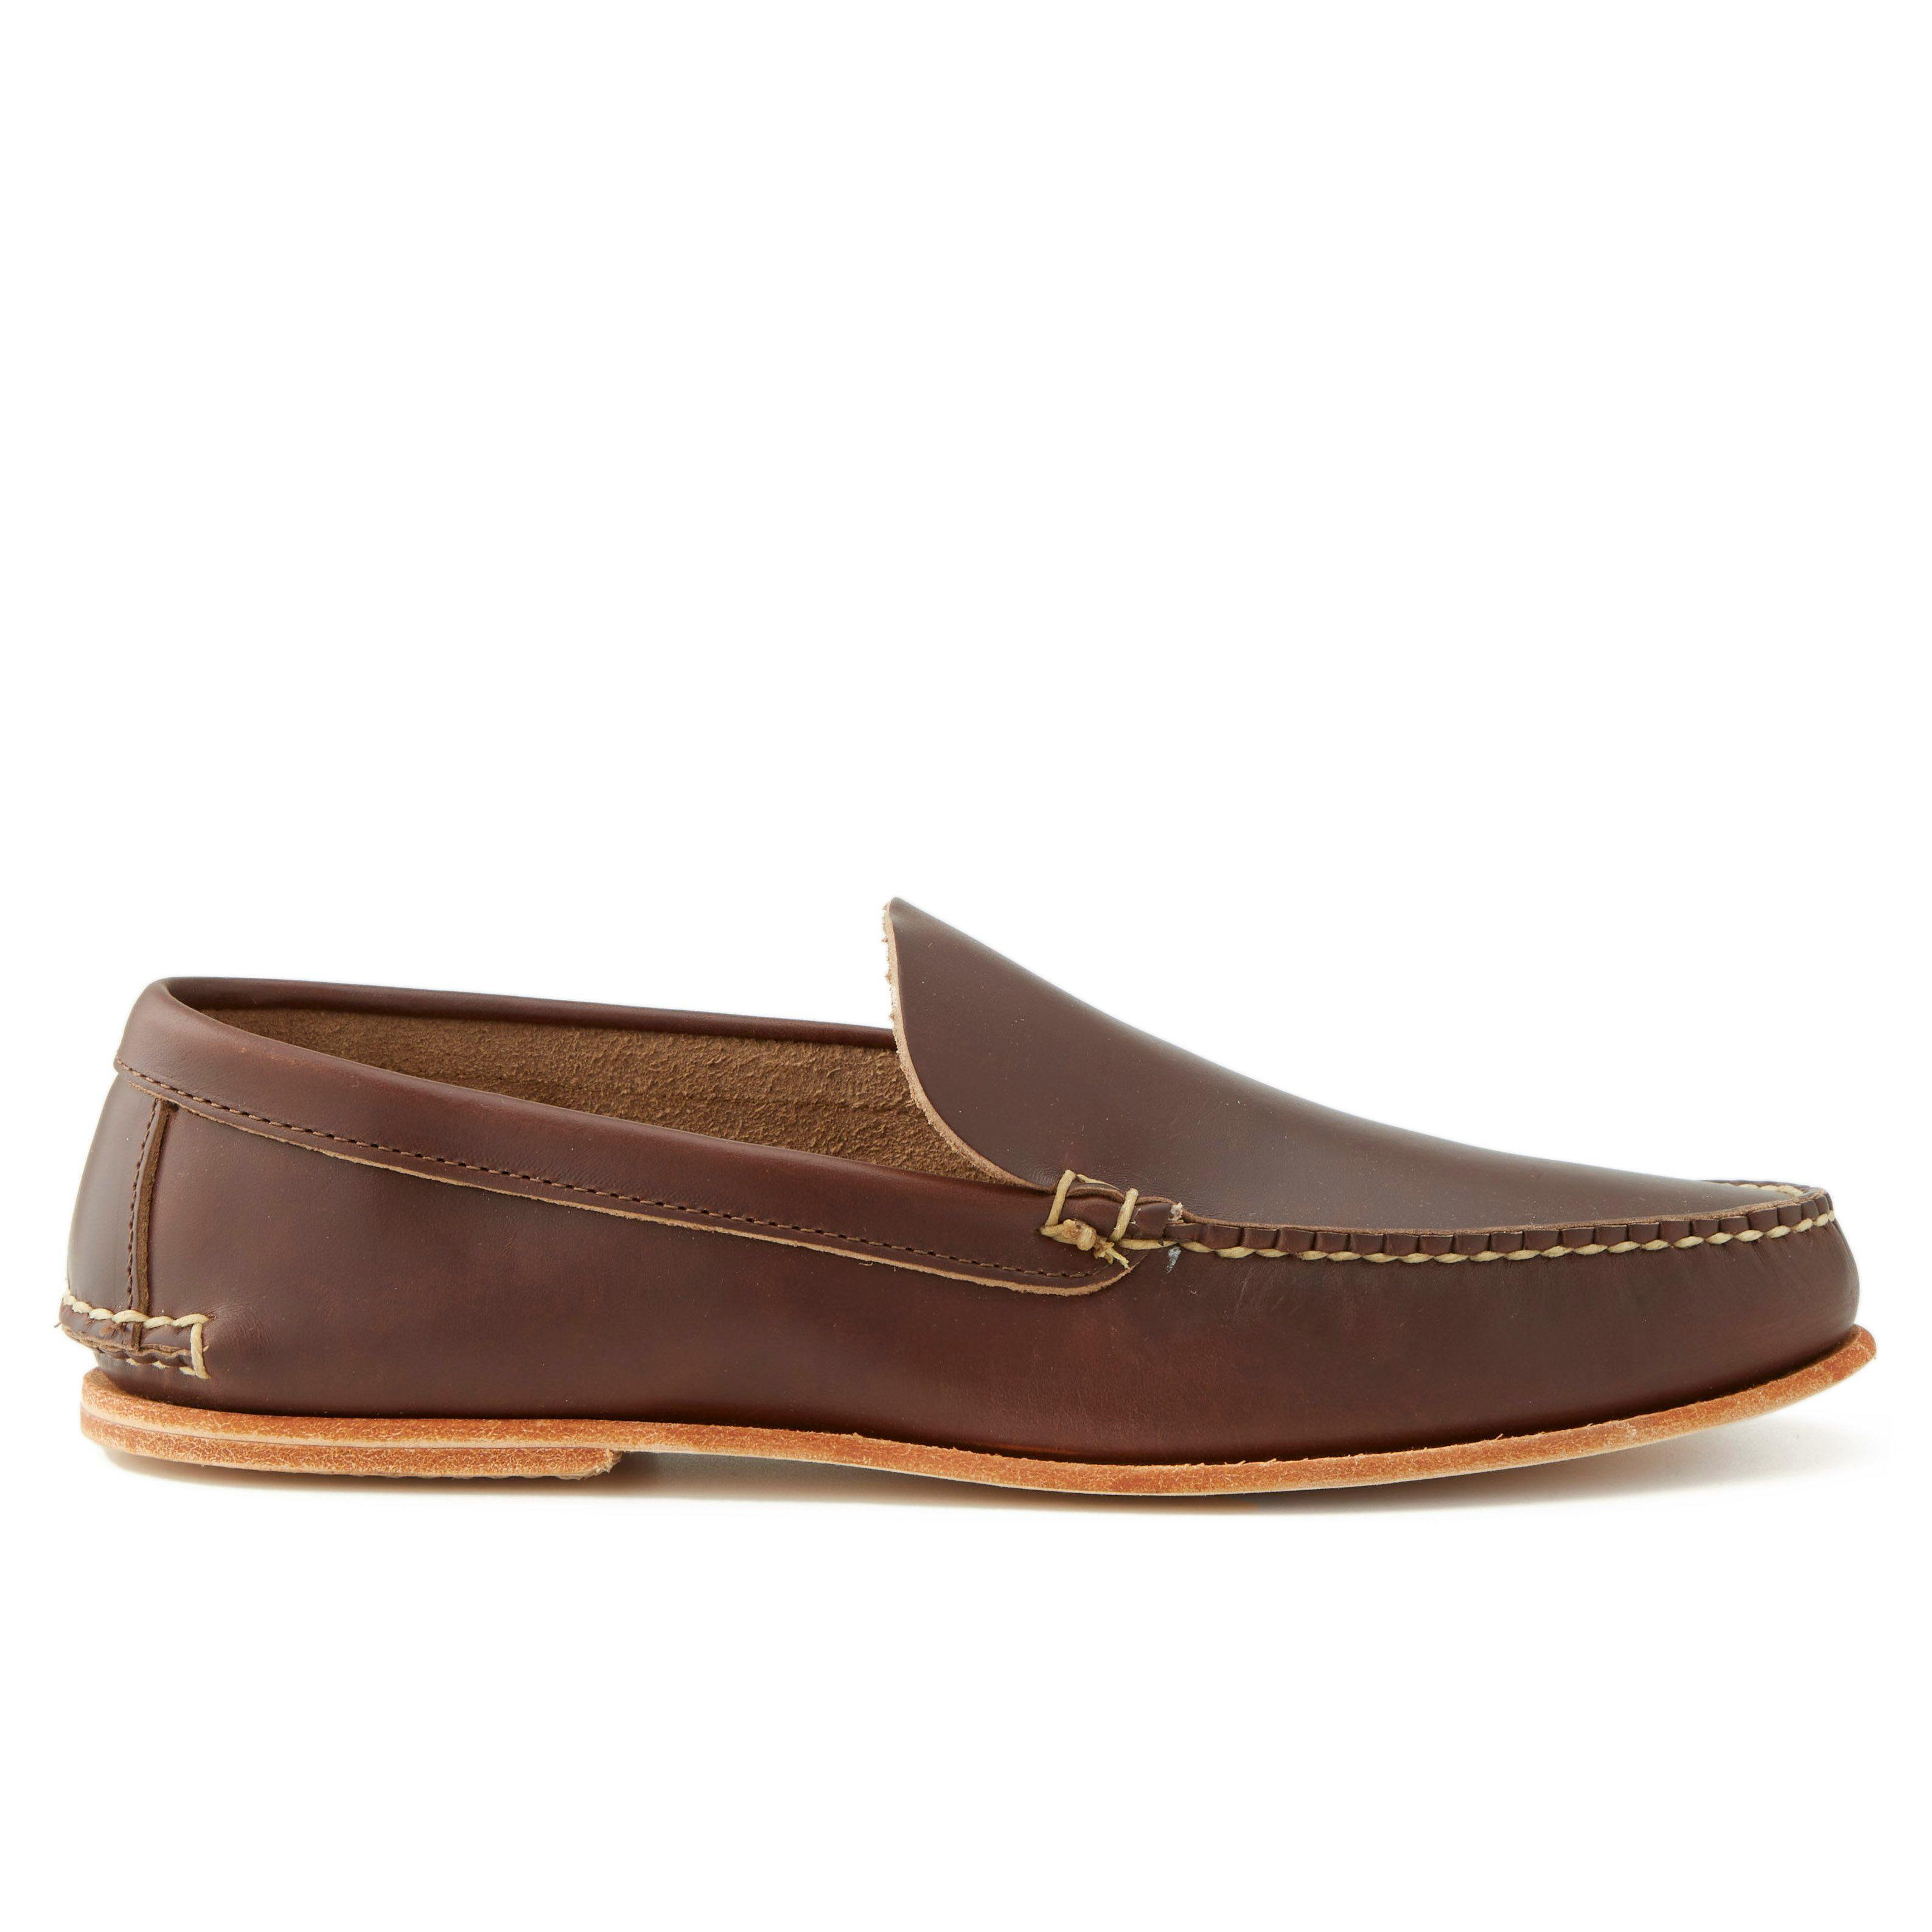 Rancourt & Co. Vintage Loafer - Carolina Brown CXL | Loafers | Huckberry